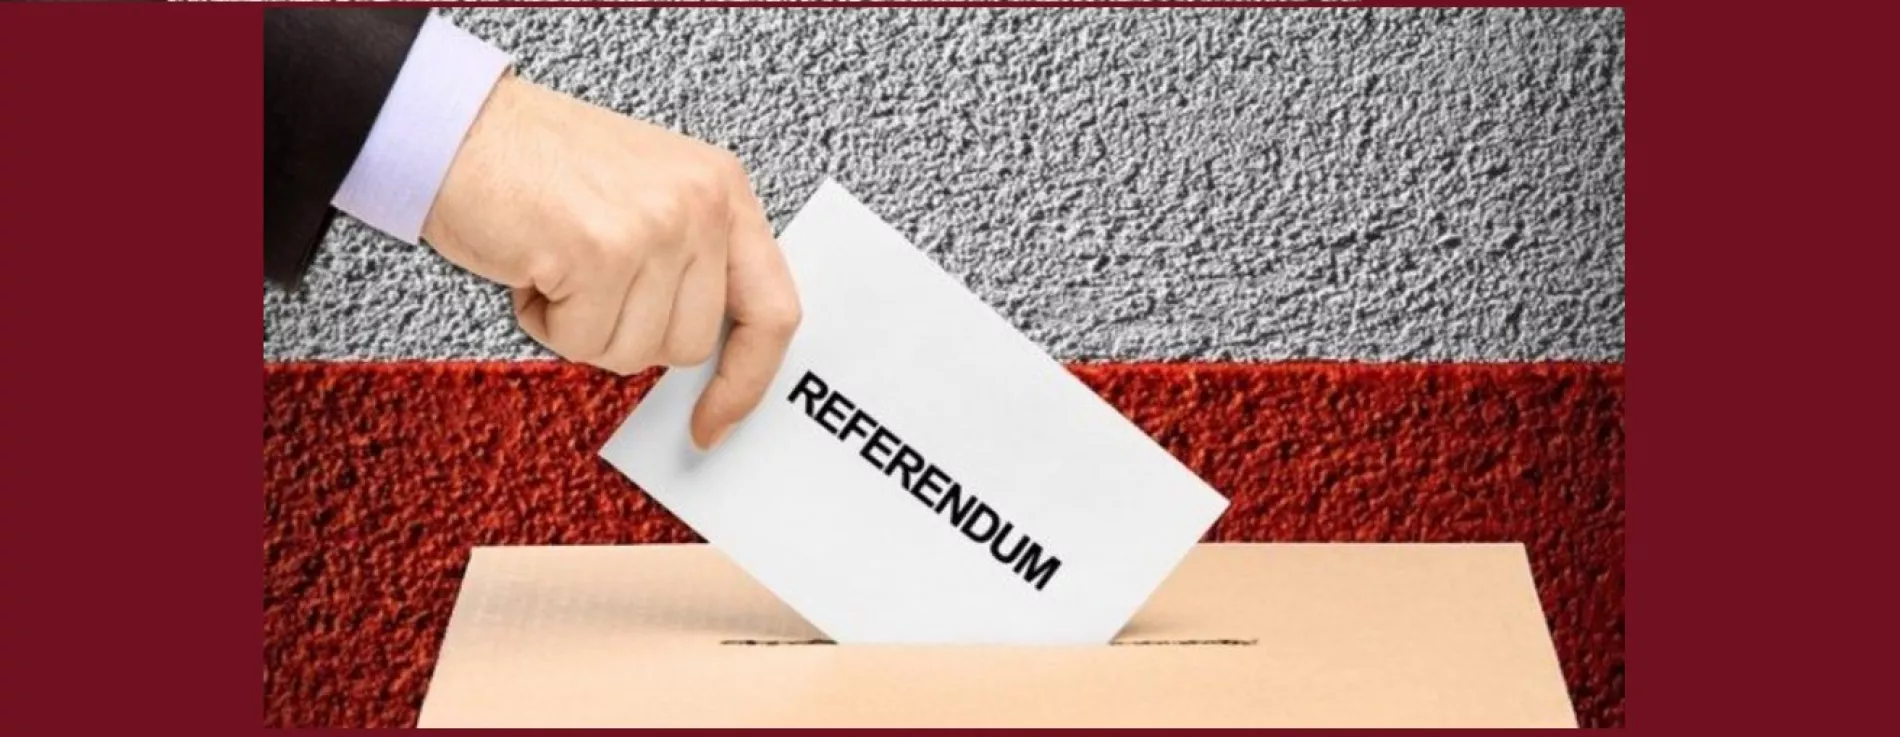 Poslanci zvážili riziká, na ktoré ich upozornilo ministerstvo vnútra, a to nezákonnosť komunálnych volieb, netransparentnosť financovania volebných kampaní a miestne referendá sa vo Vajnoroch uskutočnia v termíne sobota 8.decembra 2018